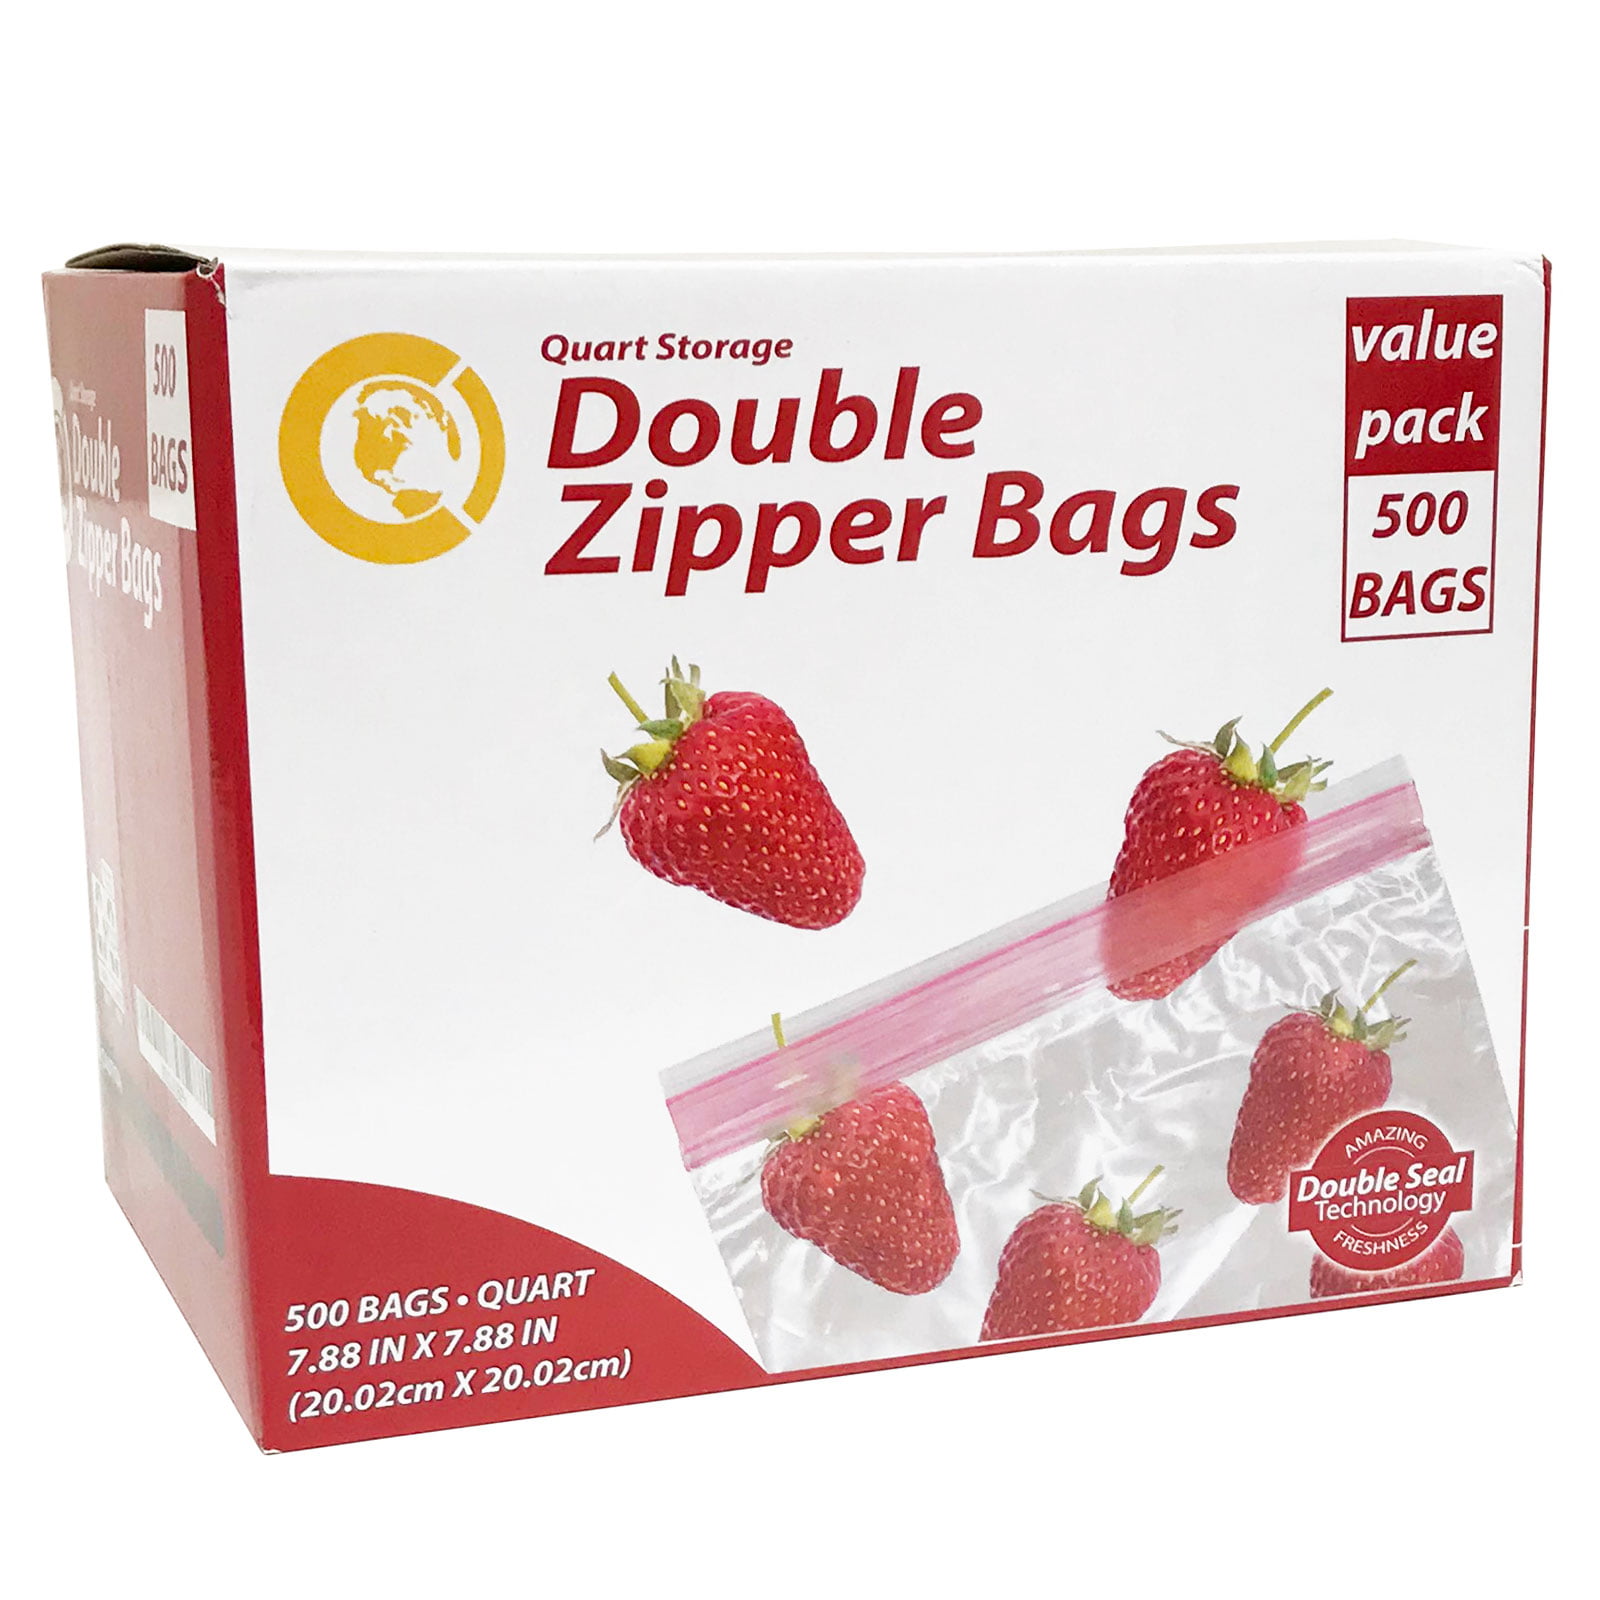 Double Zipper Quart Storage Bag, 25 quart size bags at Whole Foods Market